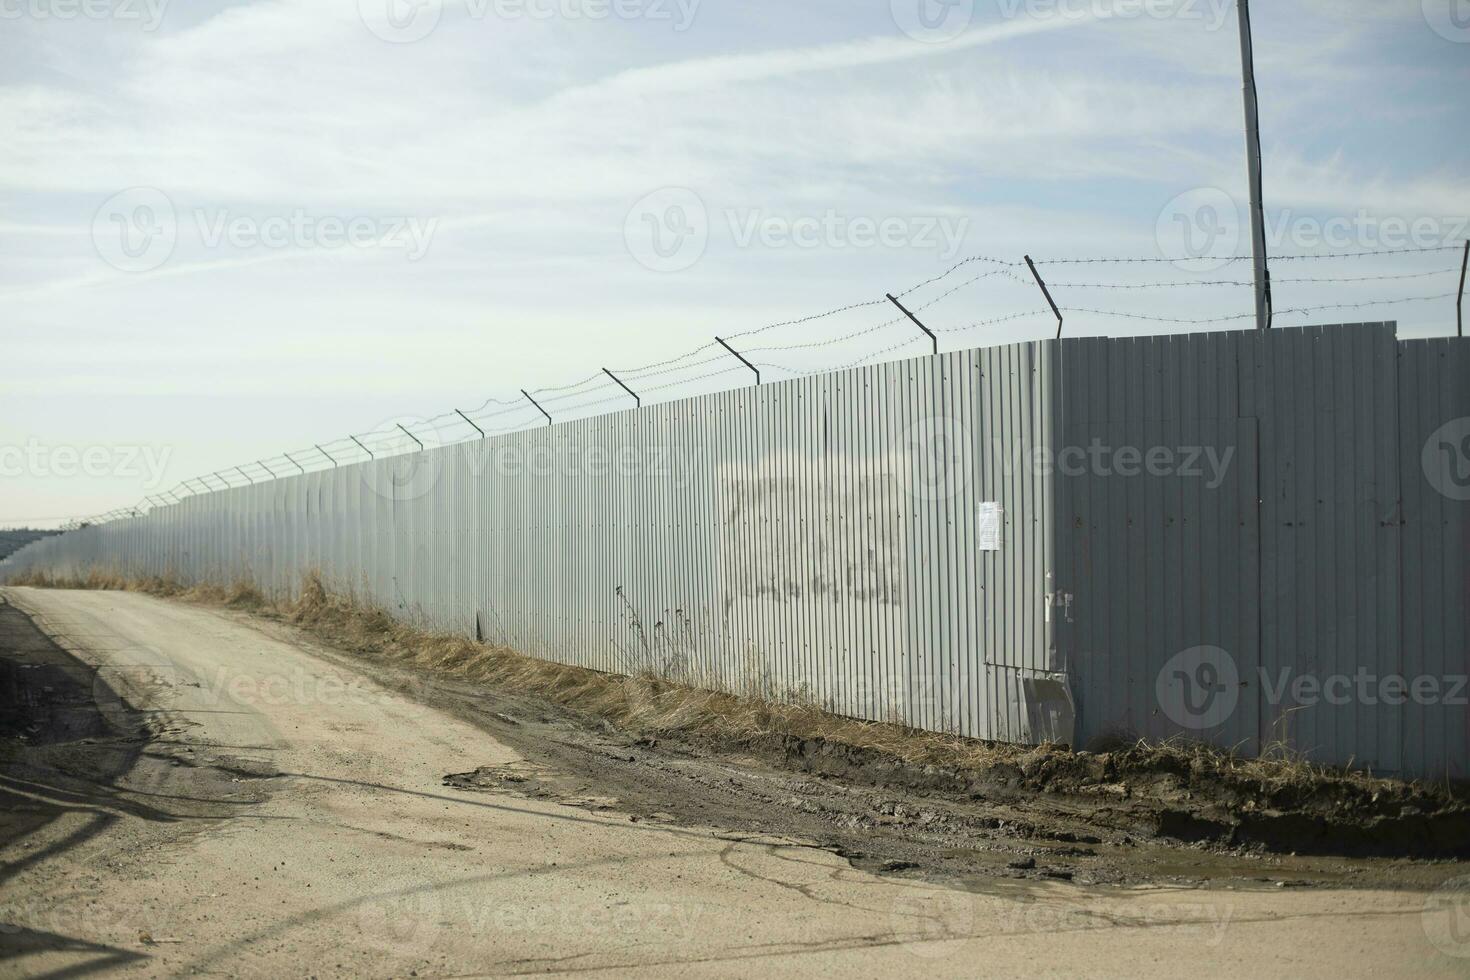 staket i industriell zon. väg längs territorium. textavsnitt mellan staket. foto